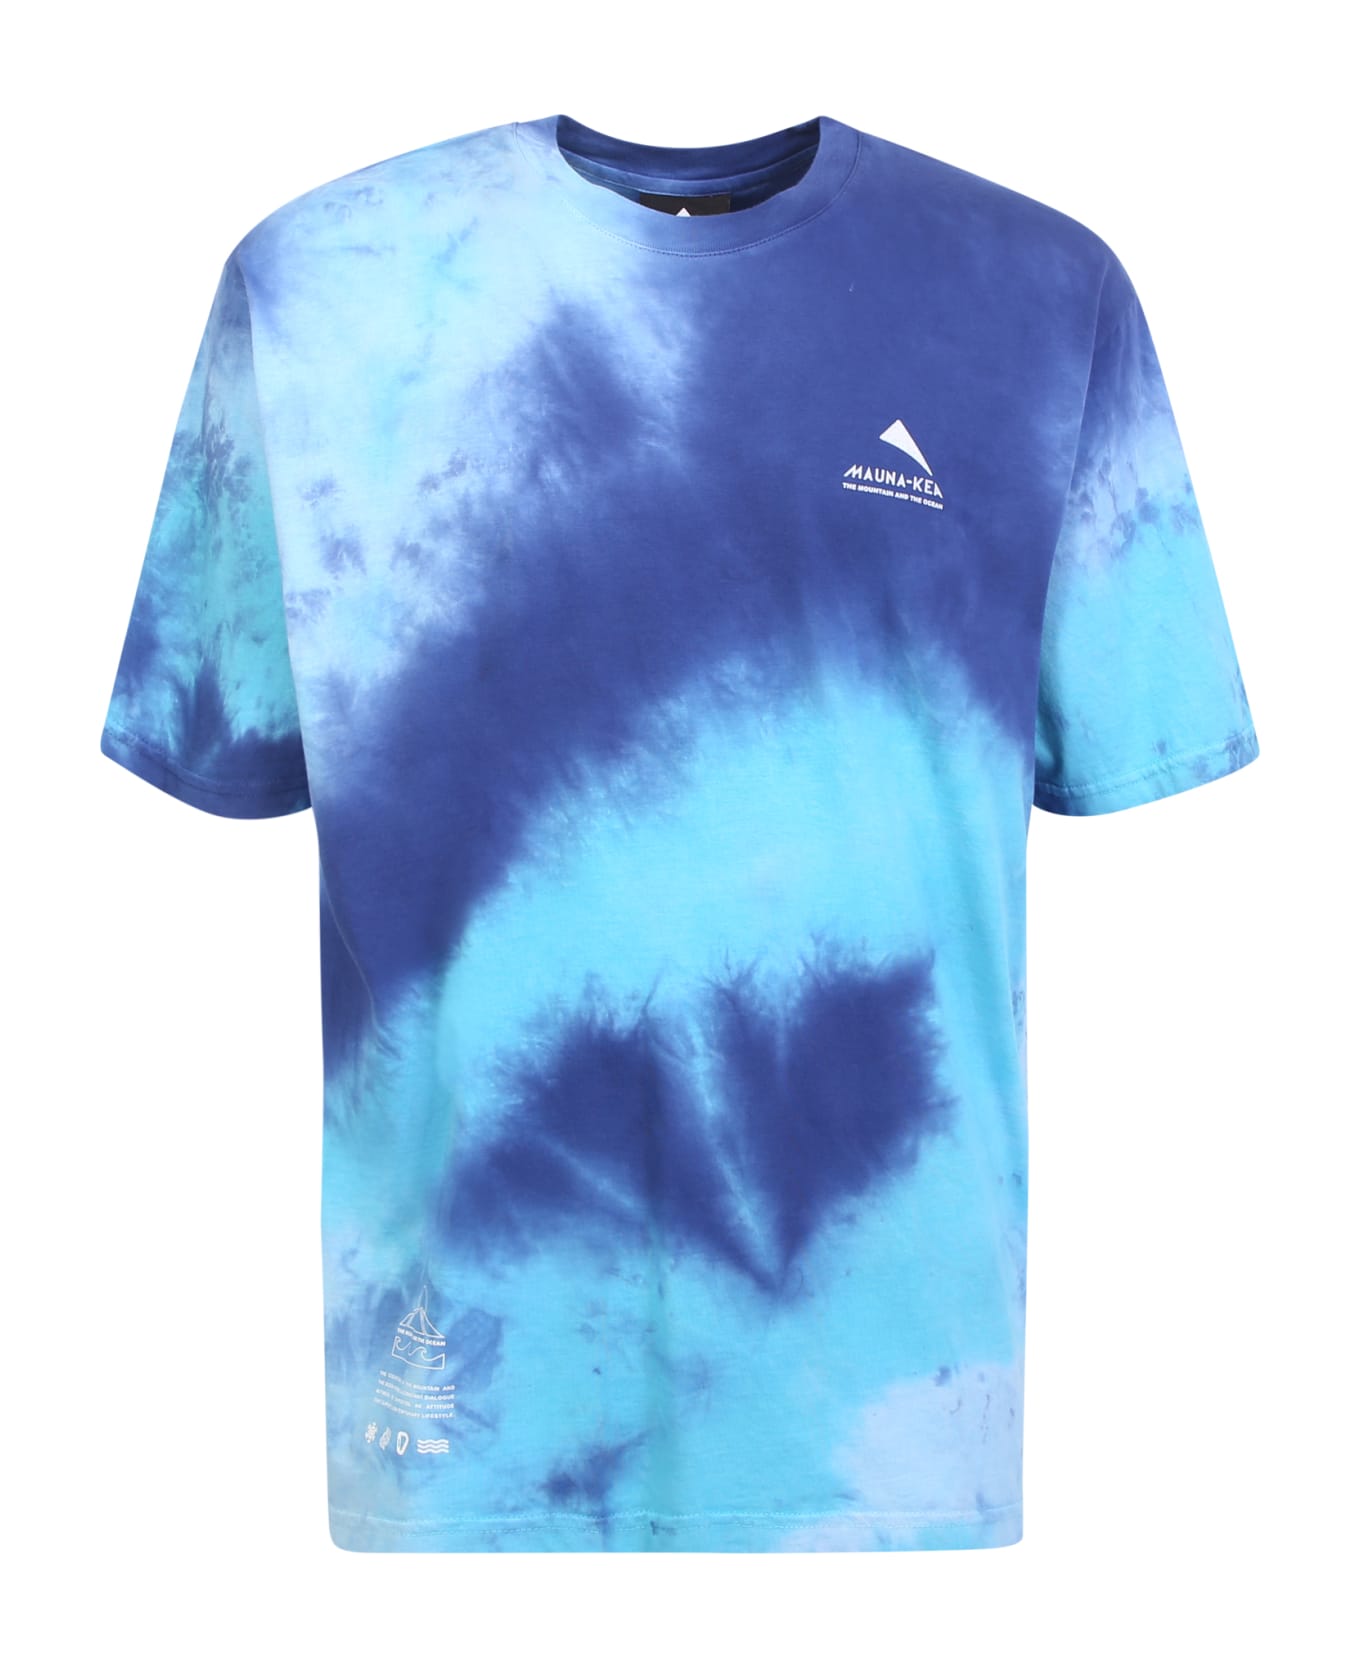 Mauna Kea Blue Tie Dye T-shirt - Multi